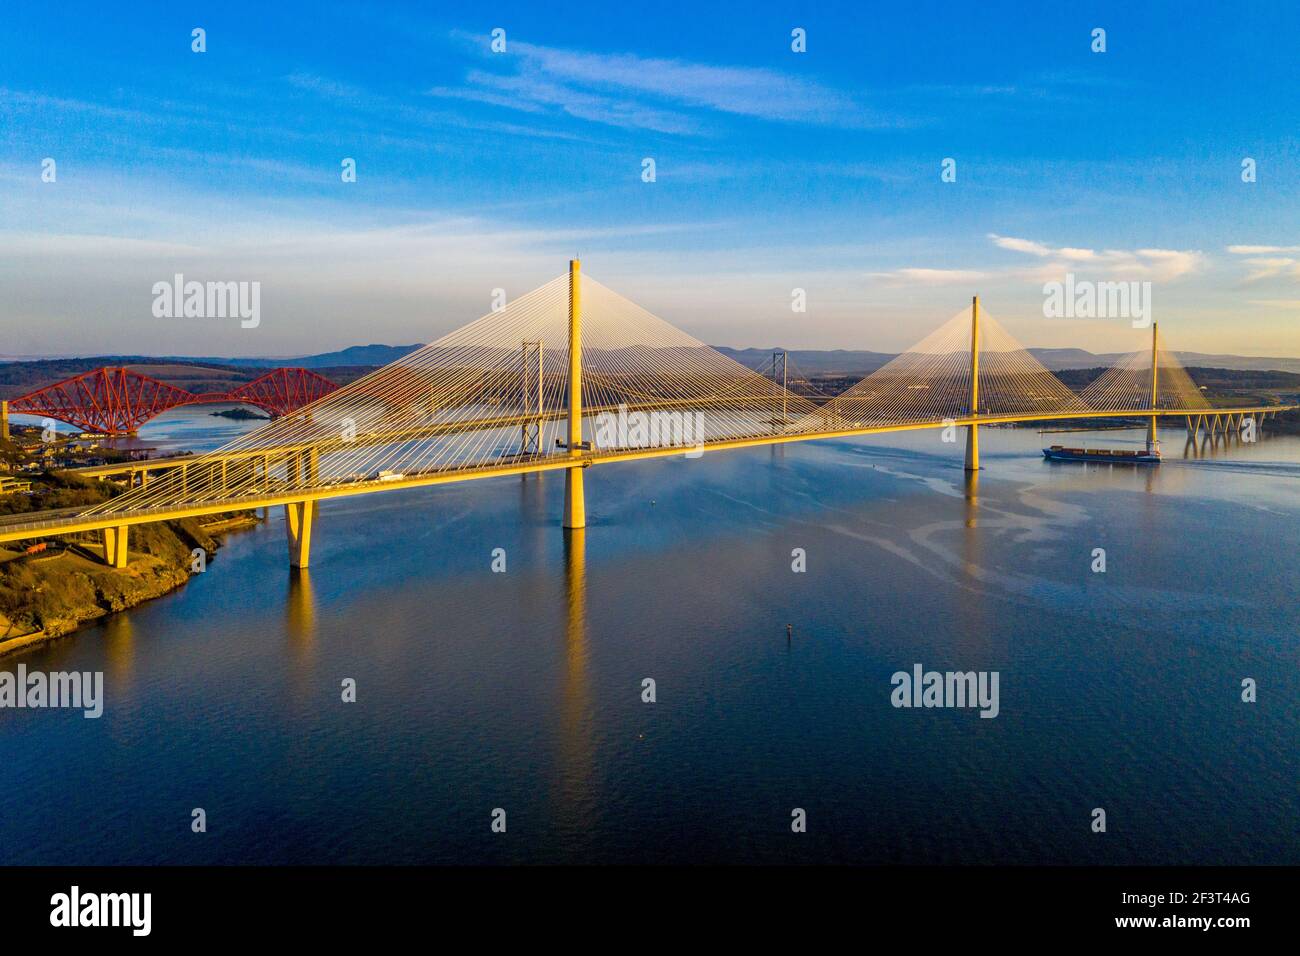 Vista aerea da Rosyth che mostra tre ponti che attraversano il Firth of Forth. Queensferry Crossing, Forth Road Bridge e Forth Rail Bridge. Foto Stock